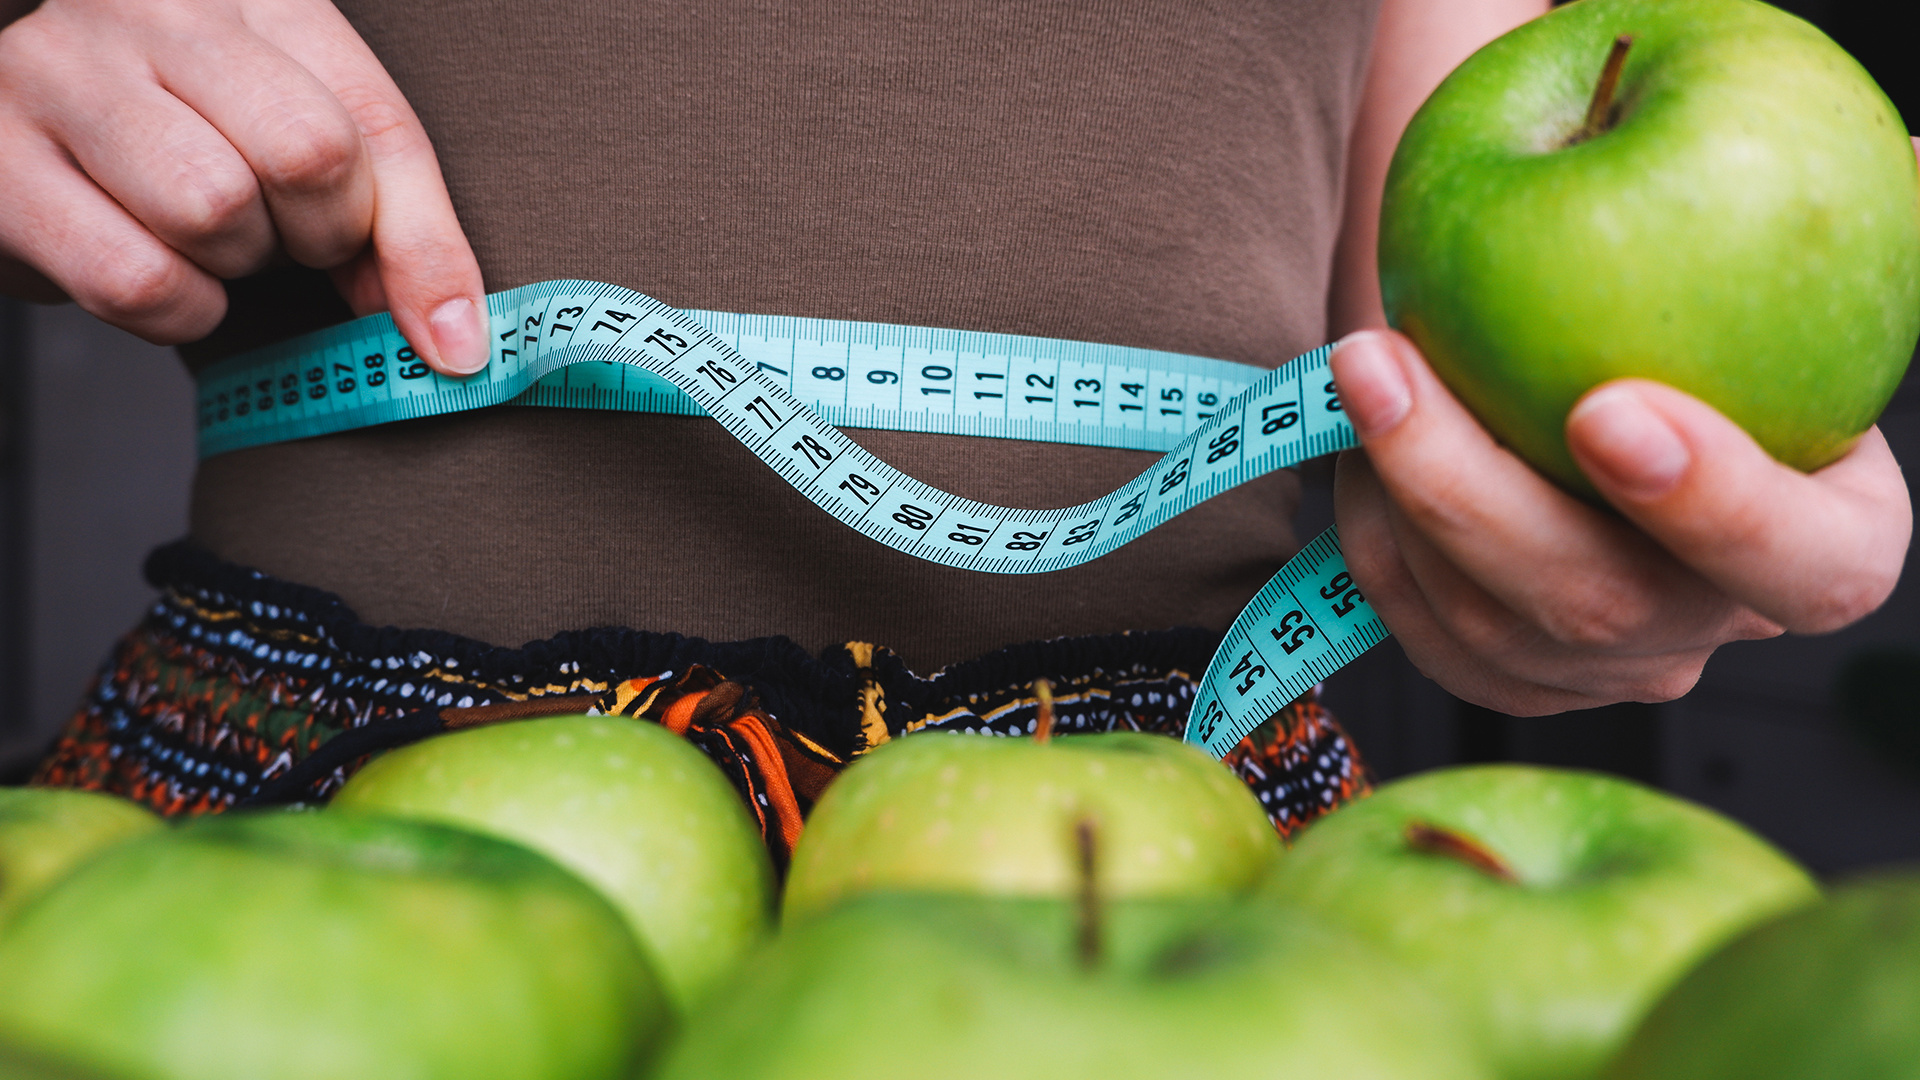 Гастроэнтеролог рассказала, как похудеть к лету: 7 простых шагов к стройной фигуре